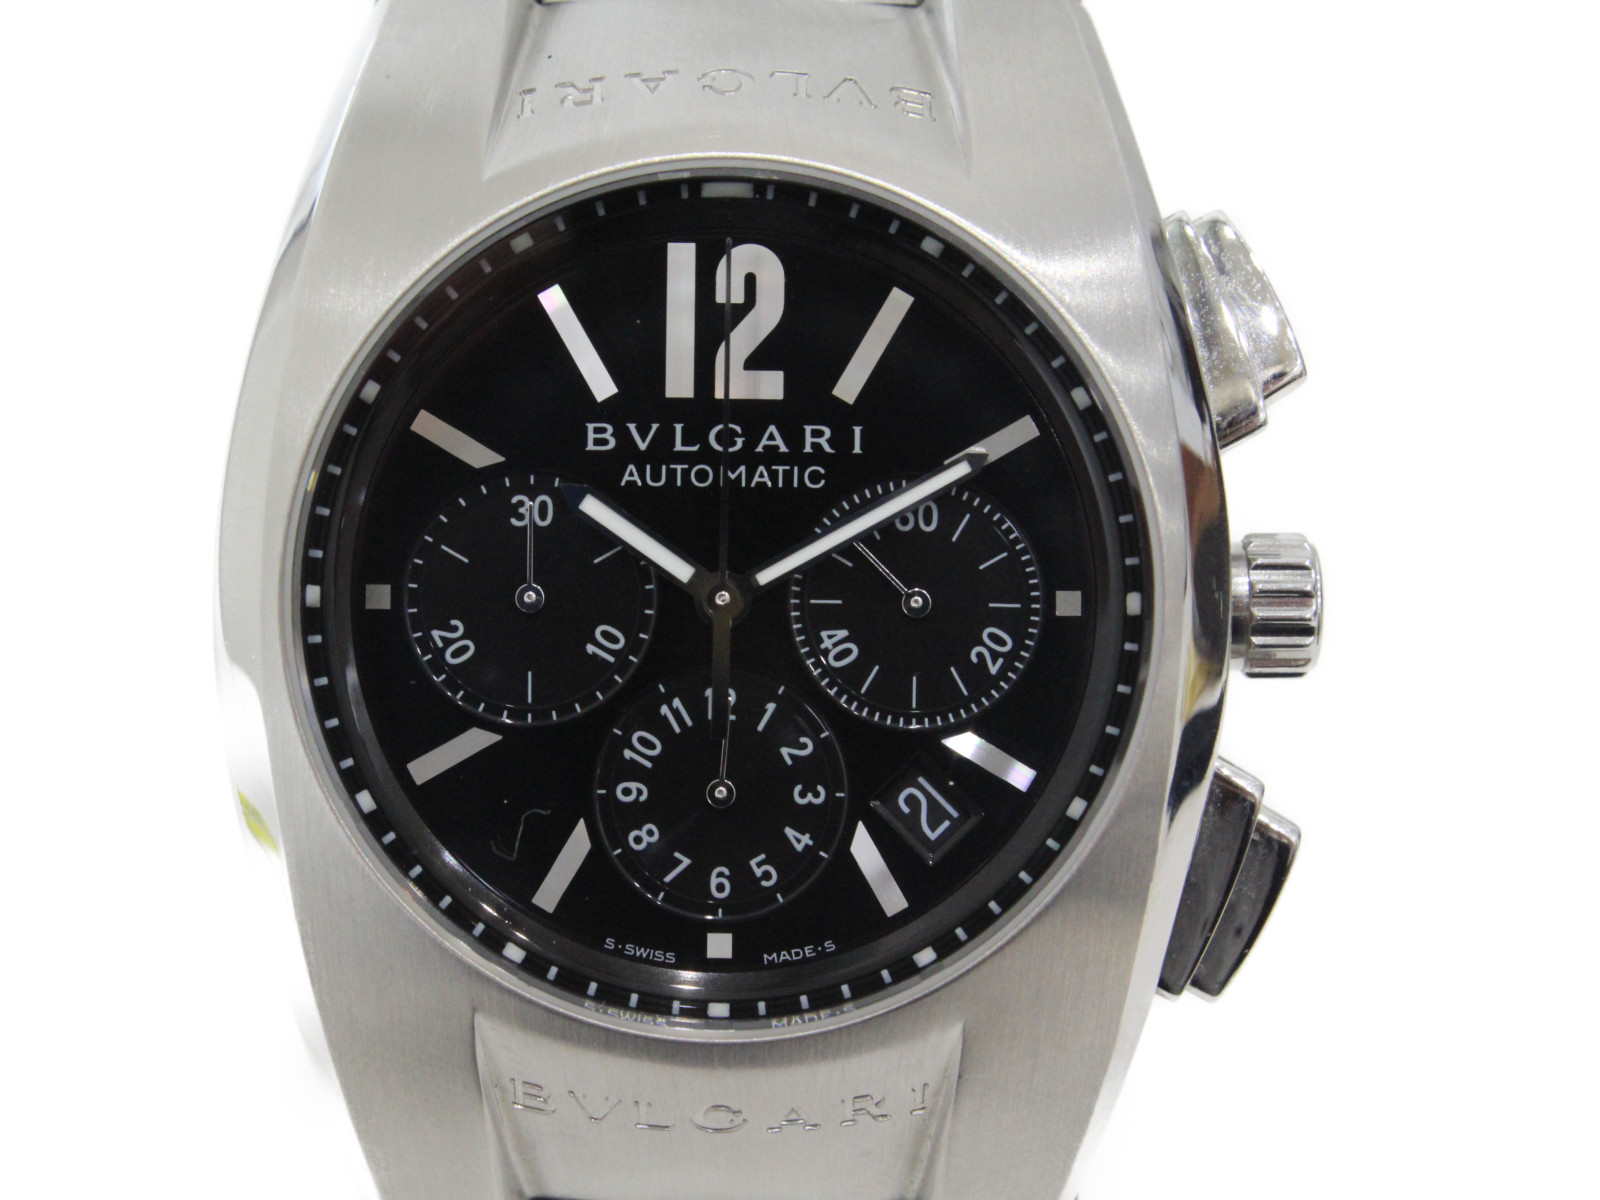 激安大特価 Eg40sch クロノグラフ エルゴン ブルガリ Bvlgari 自動巻き 腕時計 中古 メンズ ブラック ステンレススチール Ss デイト メンズ腕時計 Allsmart Websys Co Il